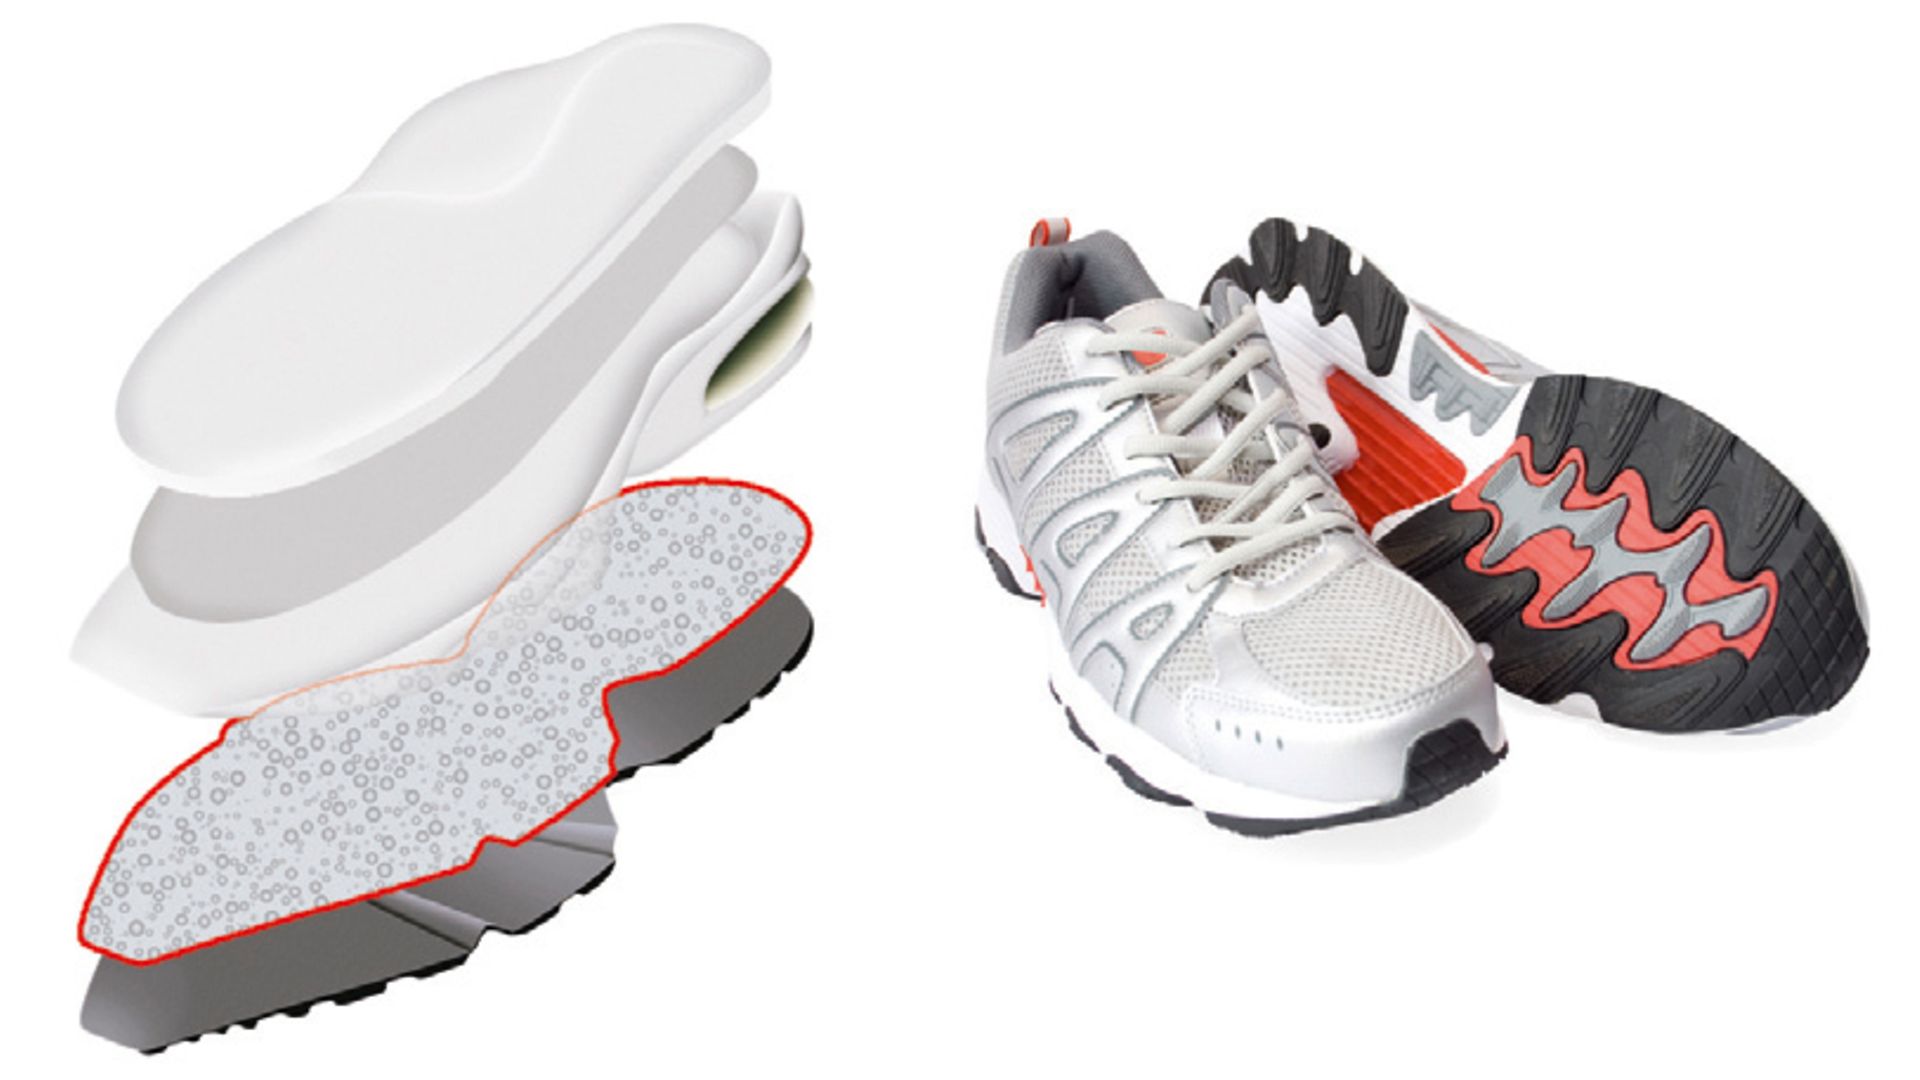 

Одна из новейших разработок компании «Хенкель» – это полиуретановый клей, который позволяет приклеить верхнюю часть обуви к подошве за одну операцию, одним мазком